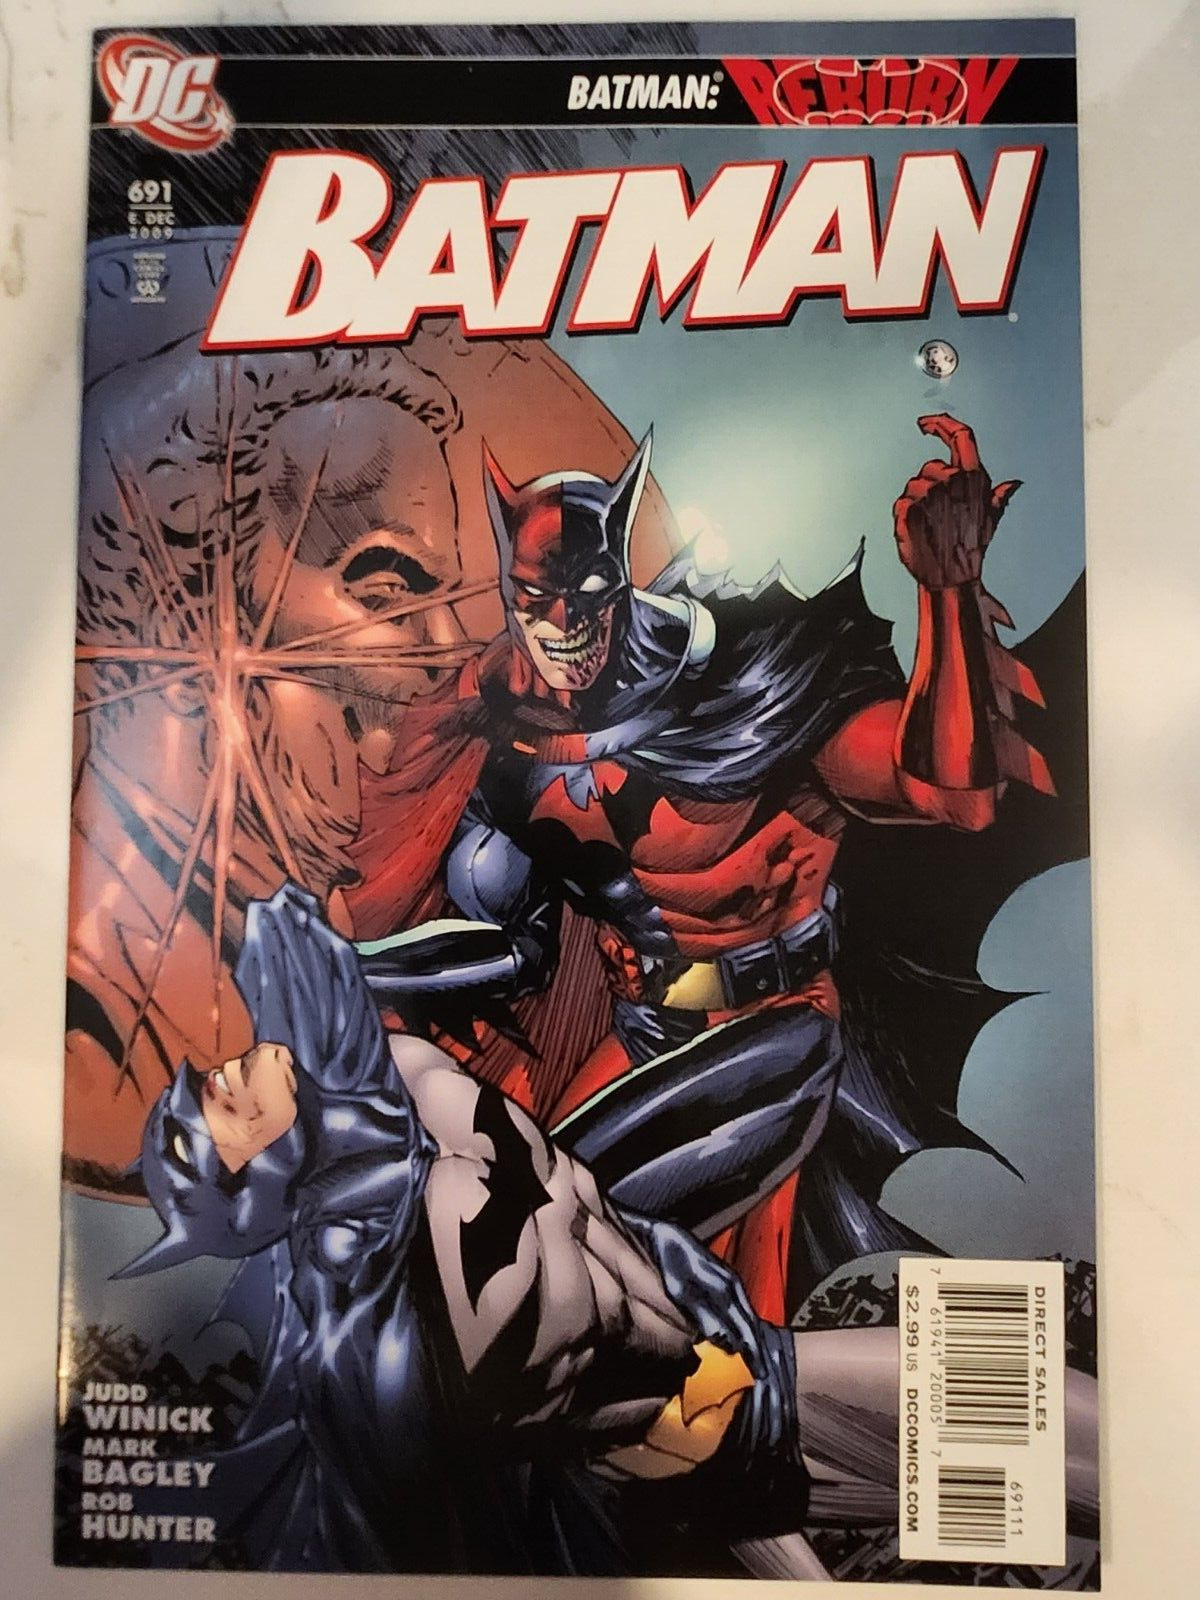 BATMAN #691 (2009 DC COMICS) BATMAN: REBORN